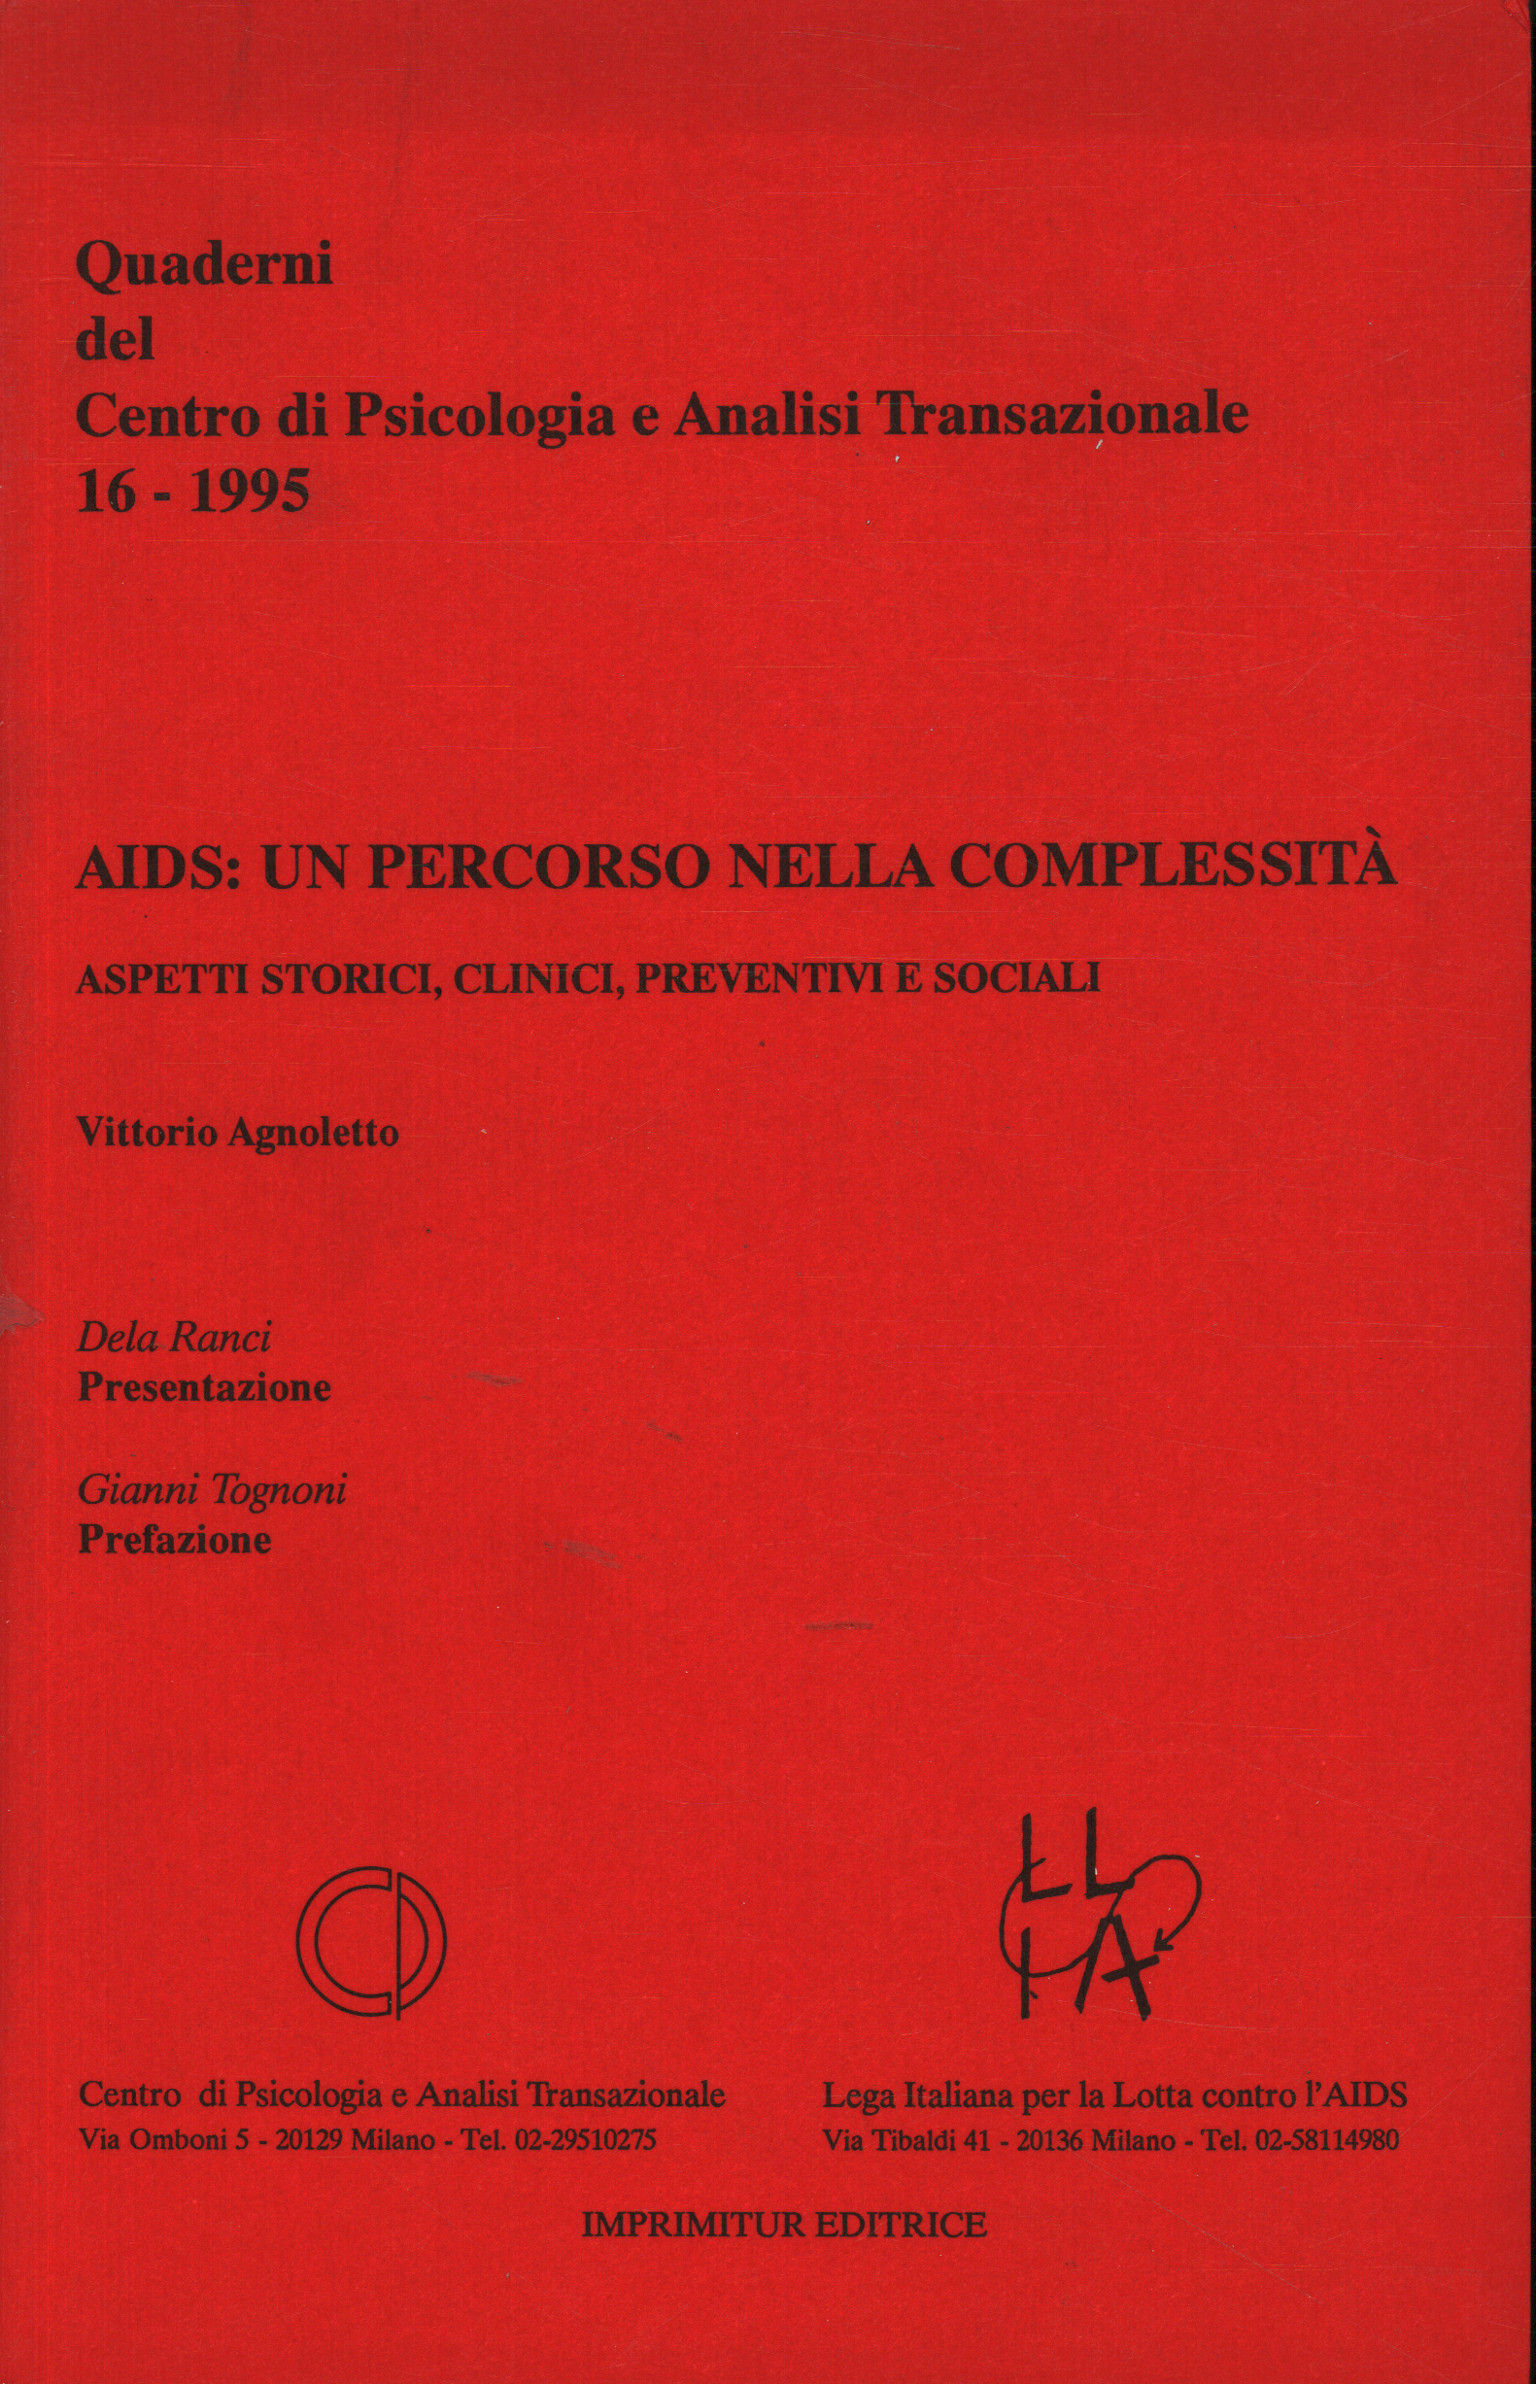 Vih / Sida:Un camino en la complejidad, Vittorio Agnoletto